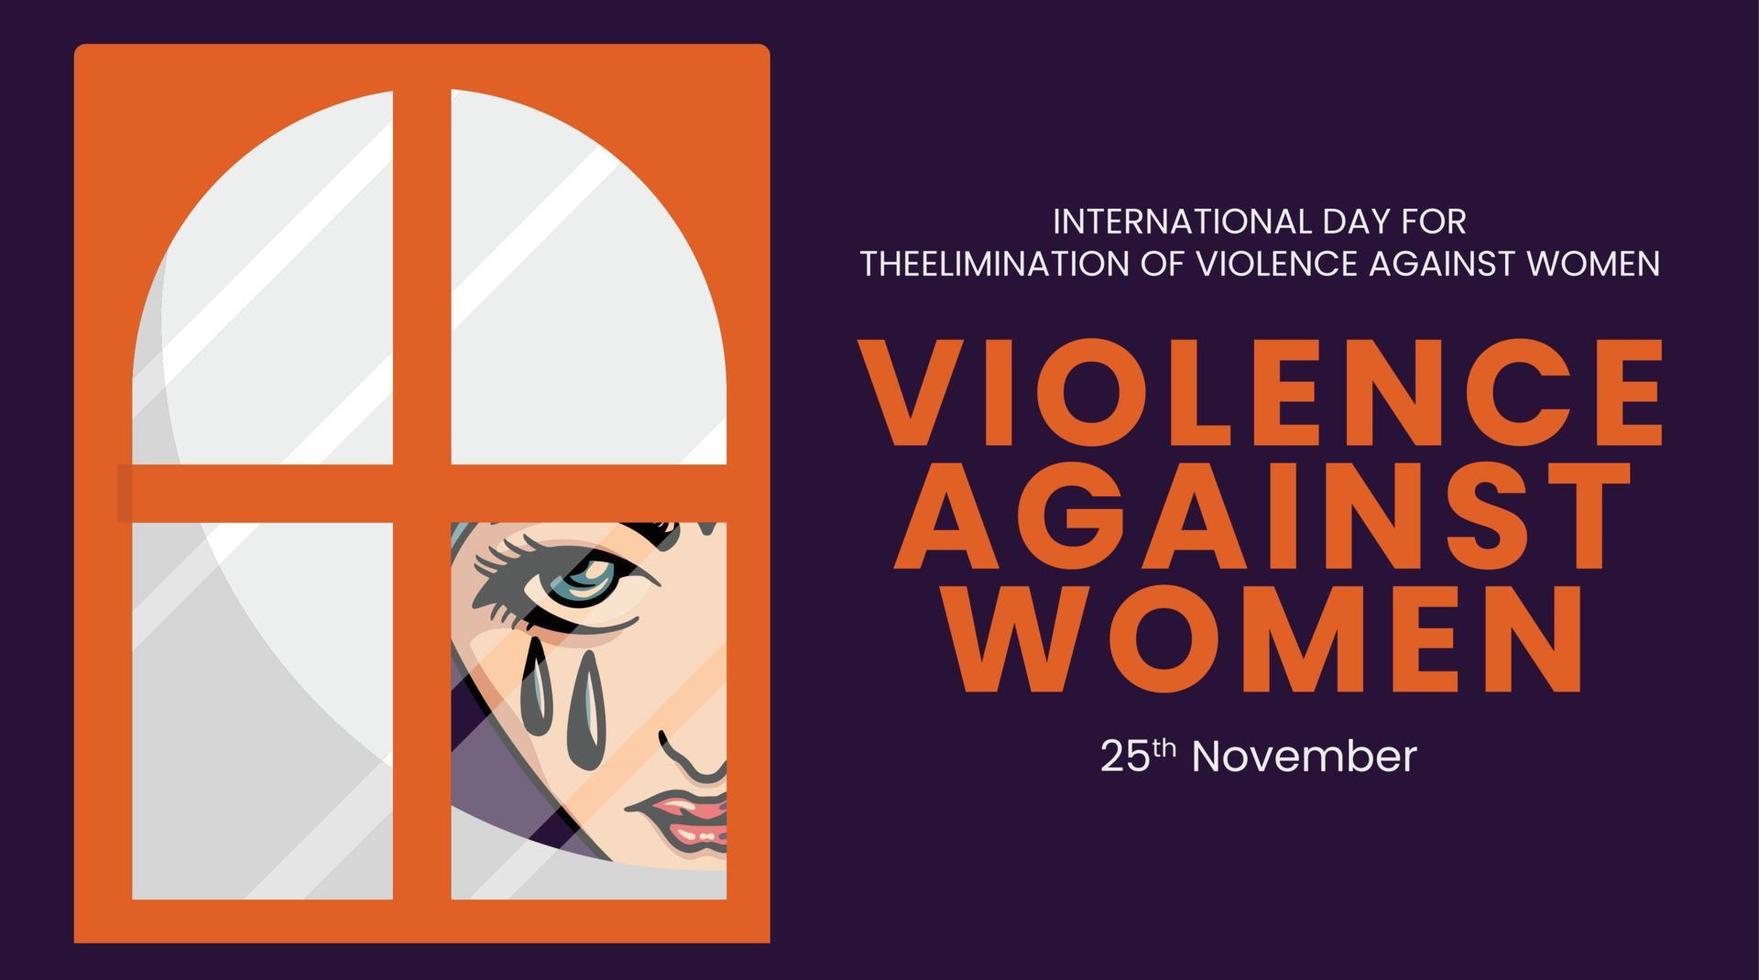 día internacional para la eliminación de la violencia contra la mujer. mujer con lágrimas llorando detrás de la ventana vector